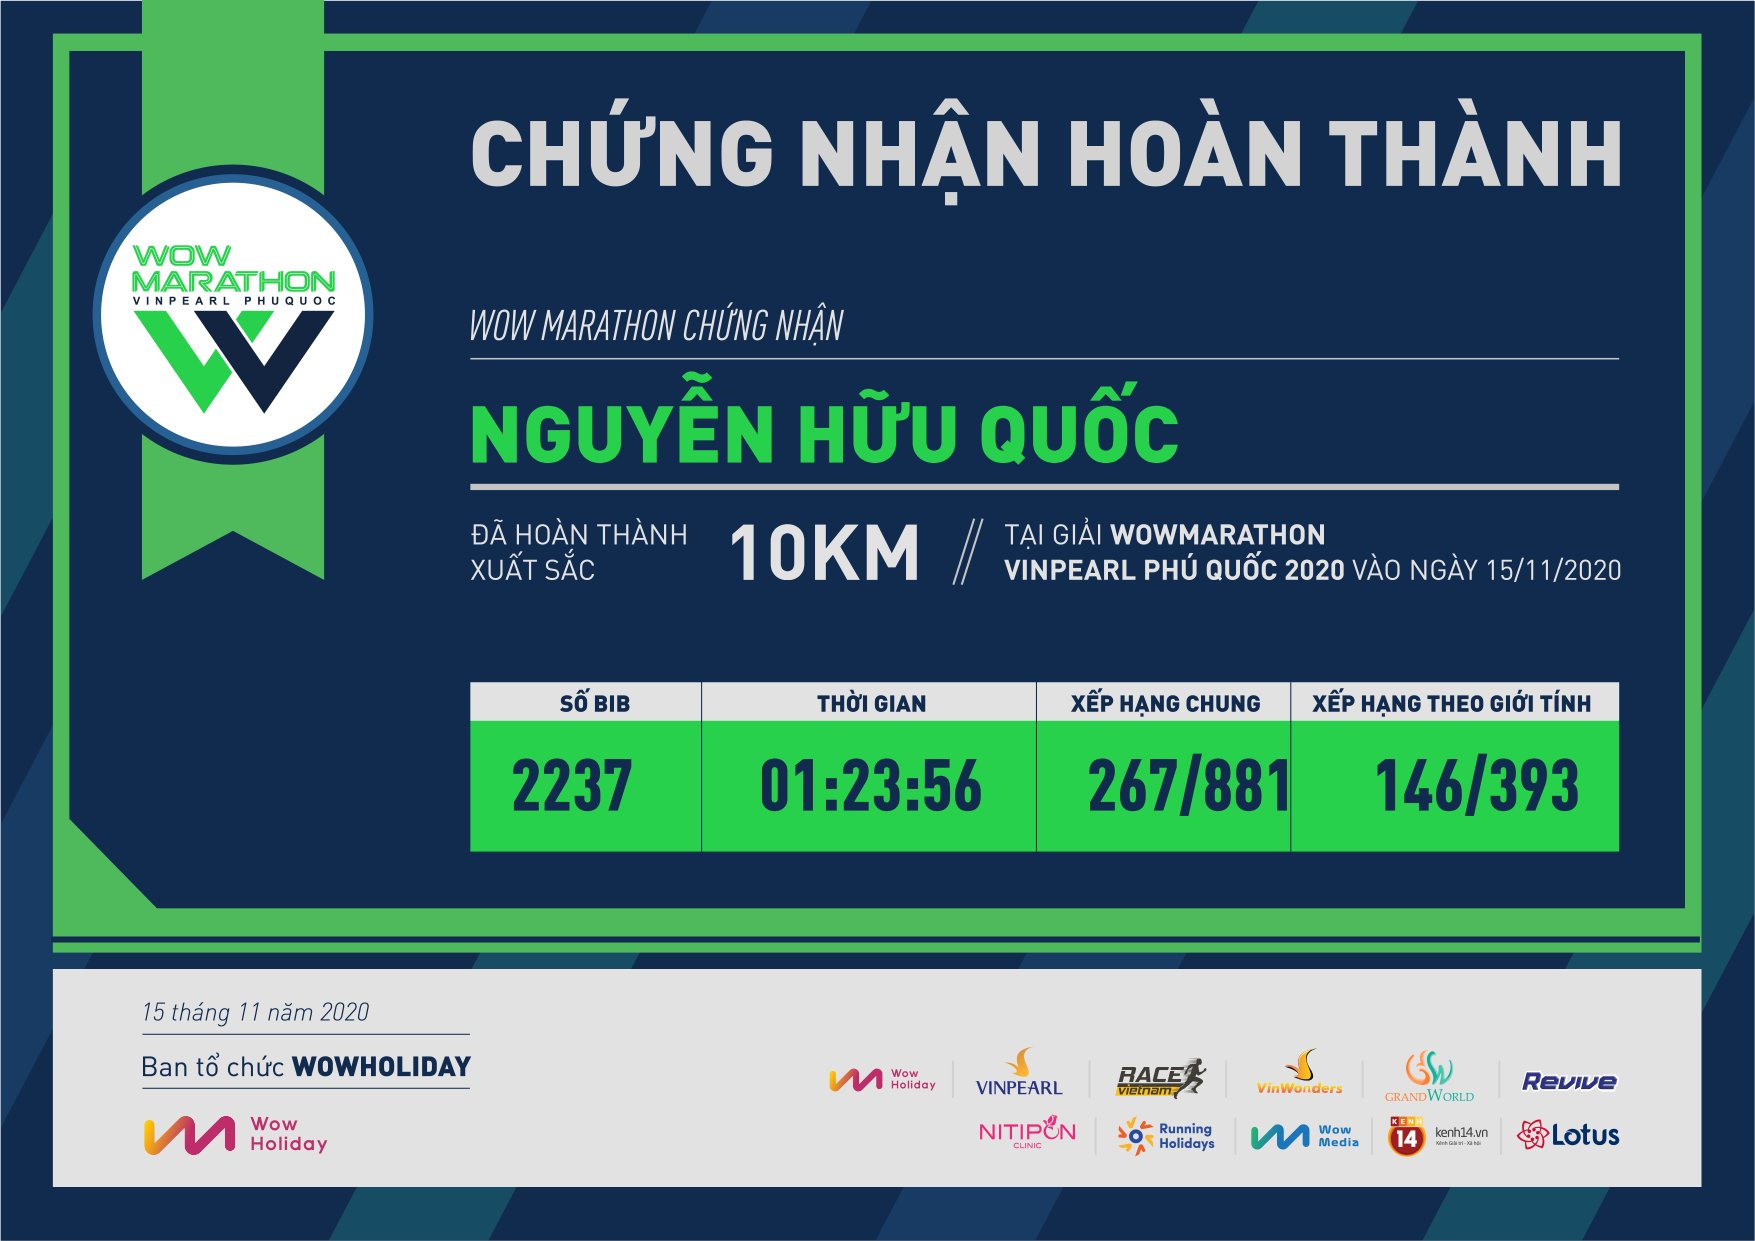 2237 - Nguyễn Hữu Quốc